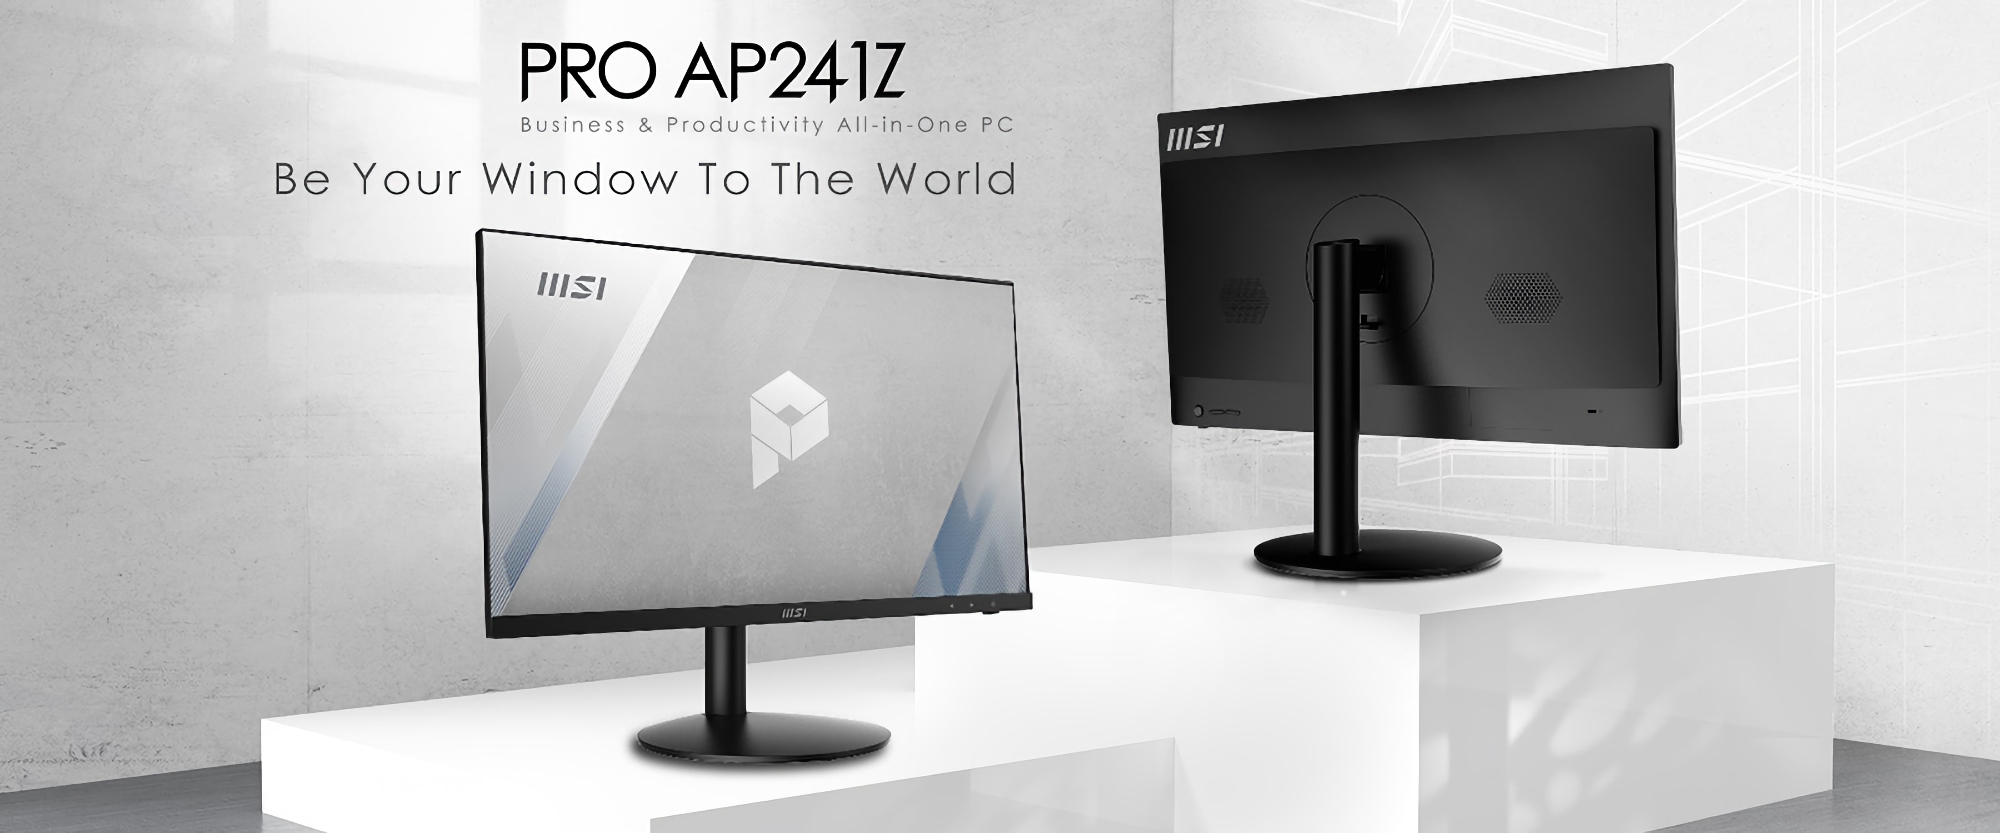 MSI annonce le PRO AP241Z : un tout-en-un 24" avec processeur AMD Ryzen 7 5700G et Windows 11 intégré